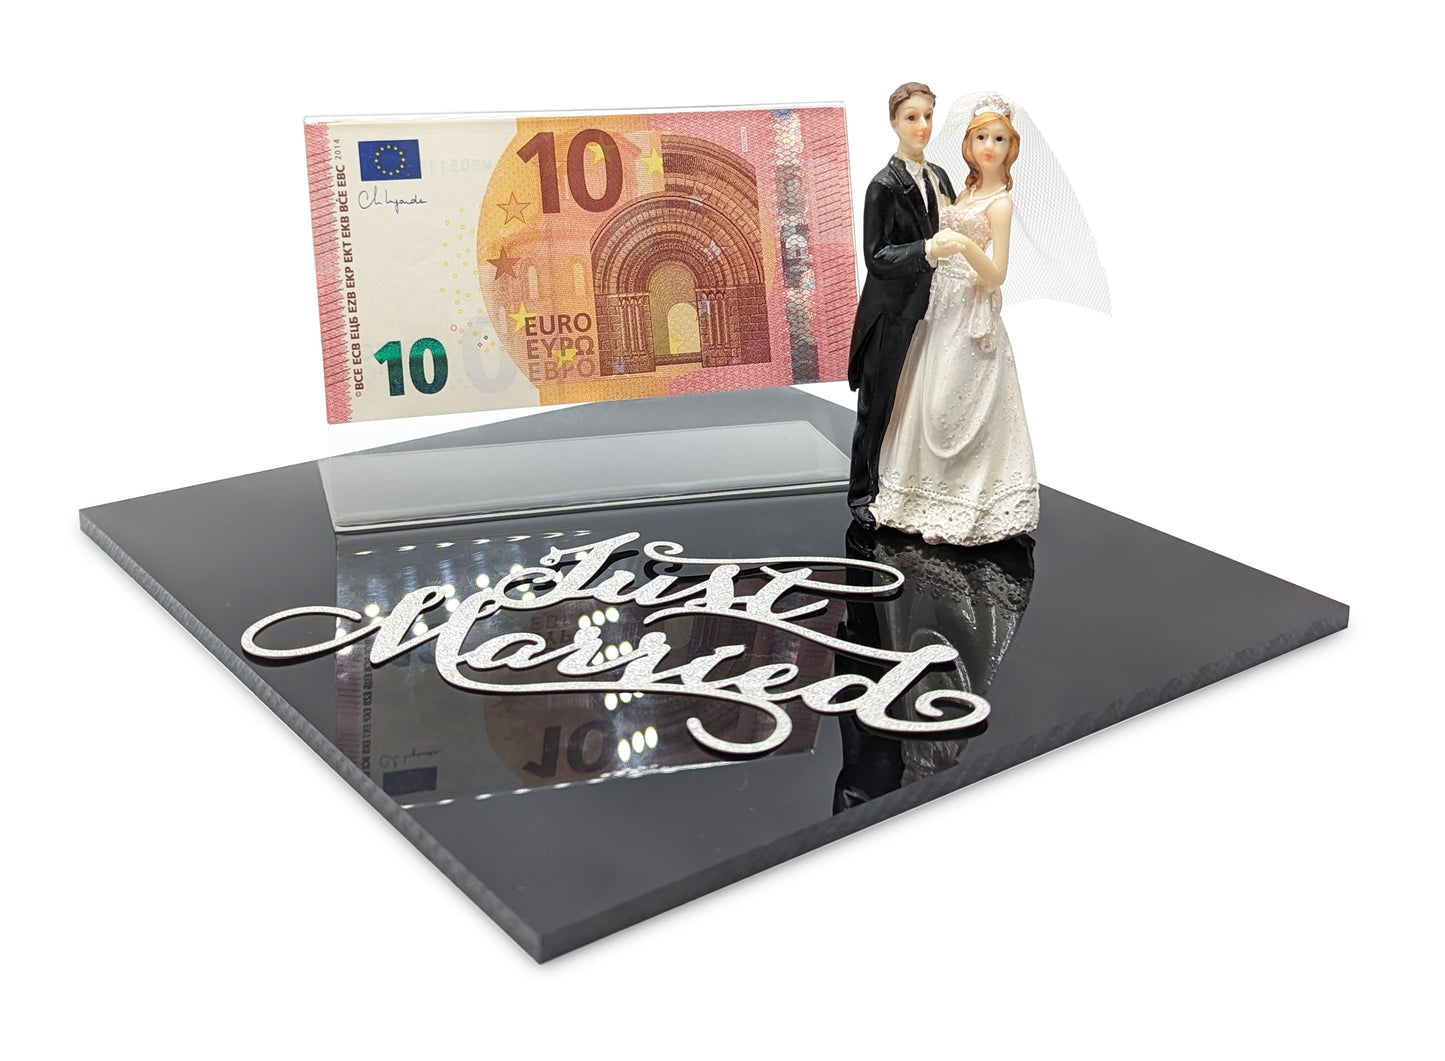 Hochzeitsgeschenke für das Brautpaar | Hochzeitsgeschenk Geldgeschenk | Hochzeit Geschenke Geld | Geldgeschenk Hochzeit personalisiert